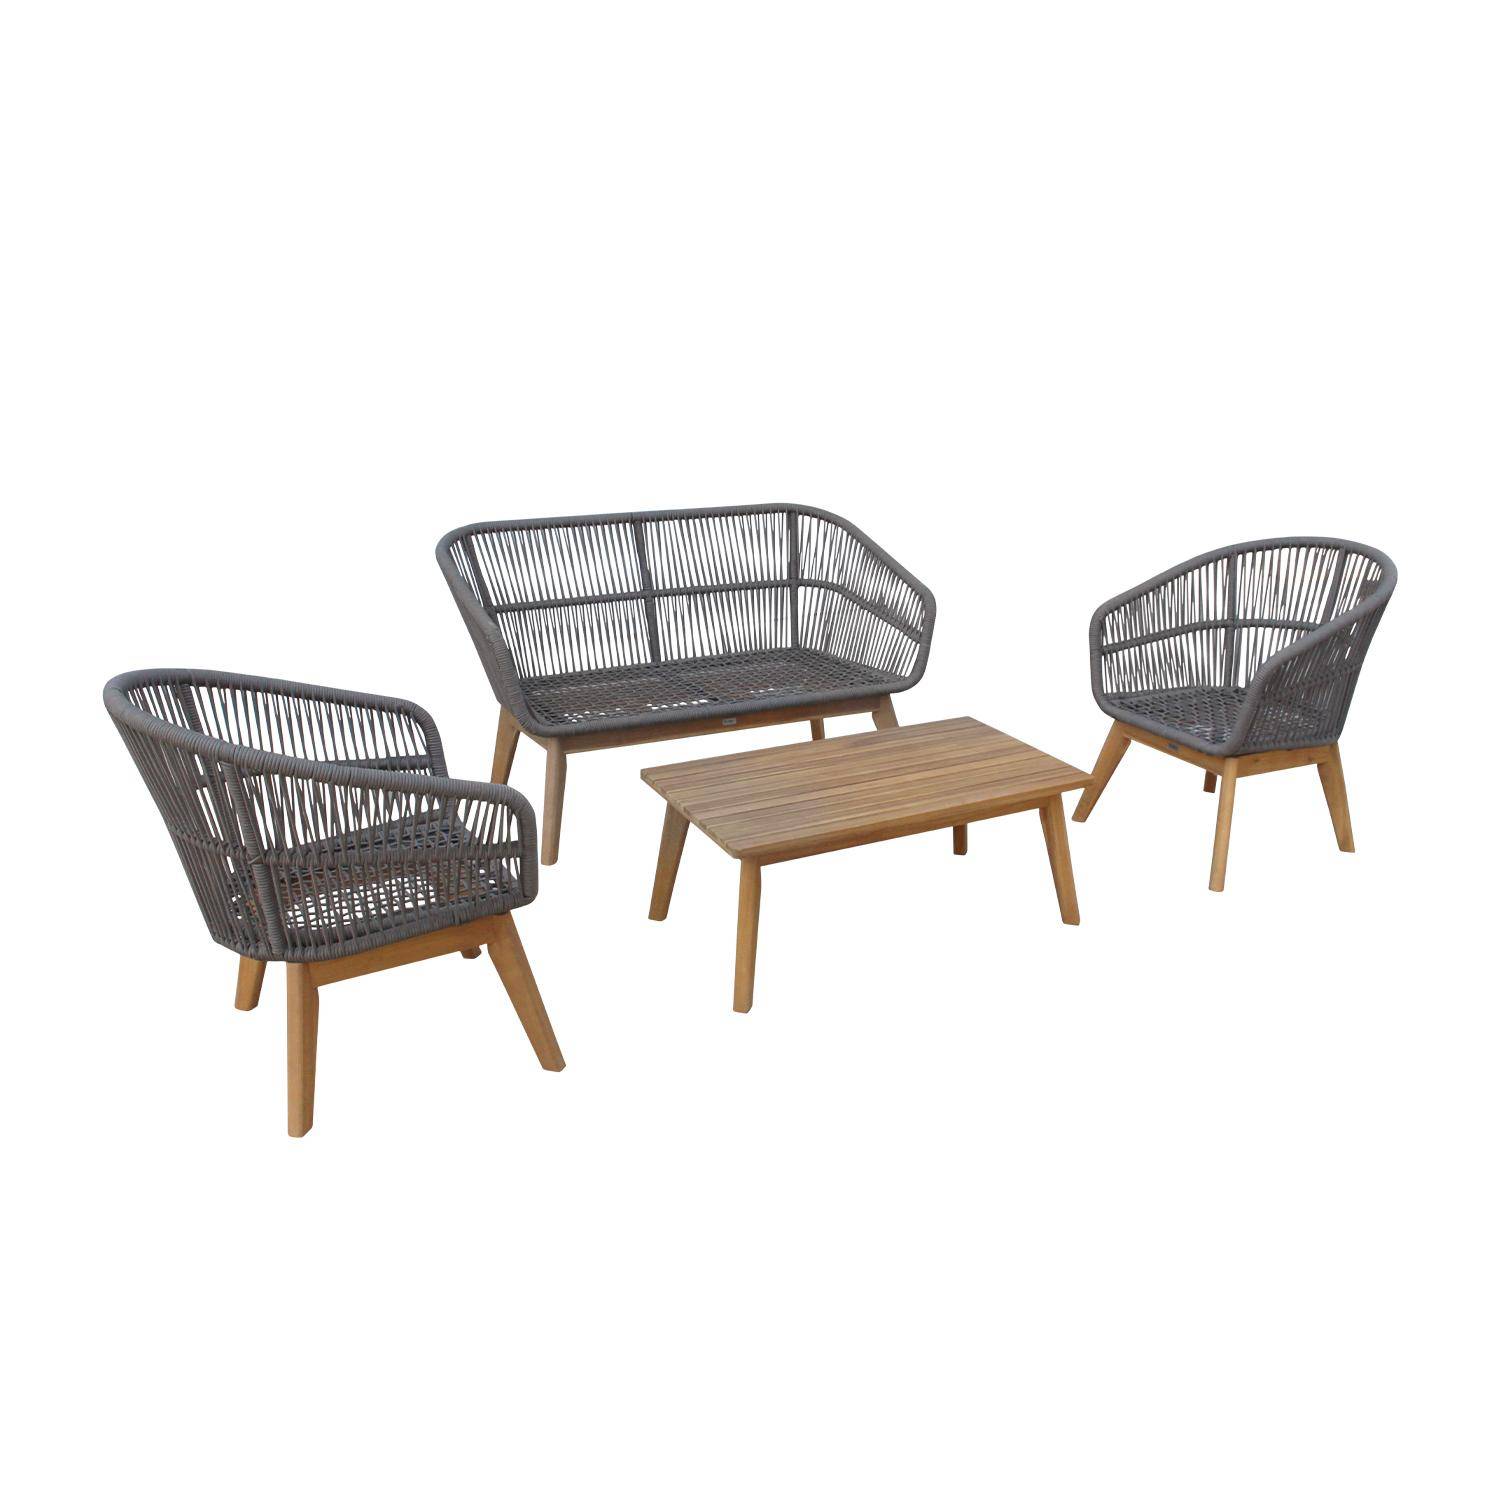 Gartengarnitur 4 Sitze - ROSARIO - aus geflochtenen Seilen, Holz und Aluminium, grau / graumelierte Kissen Photo4